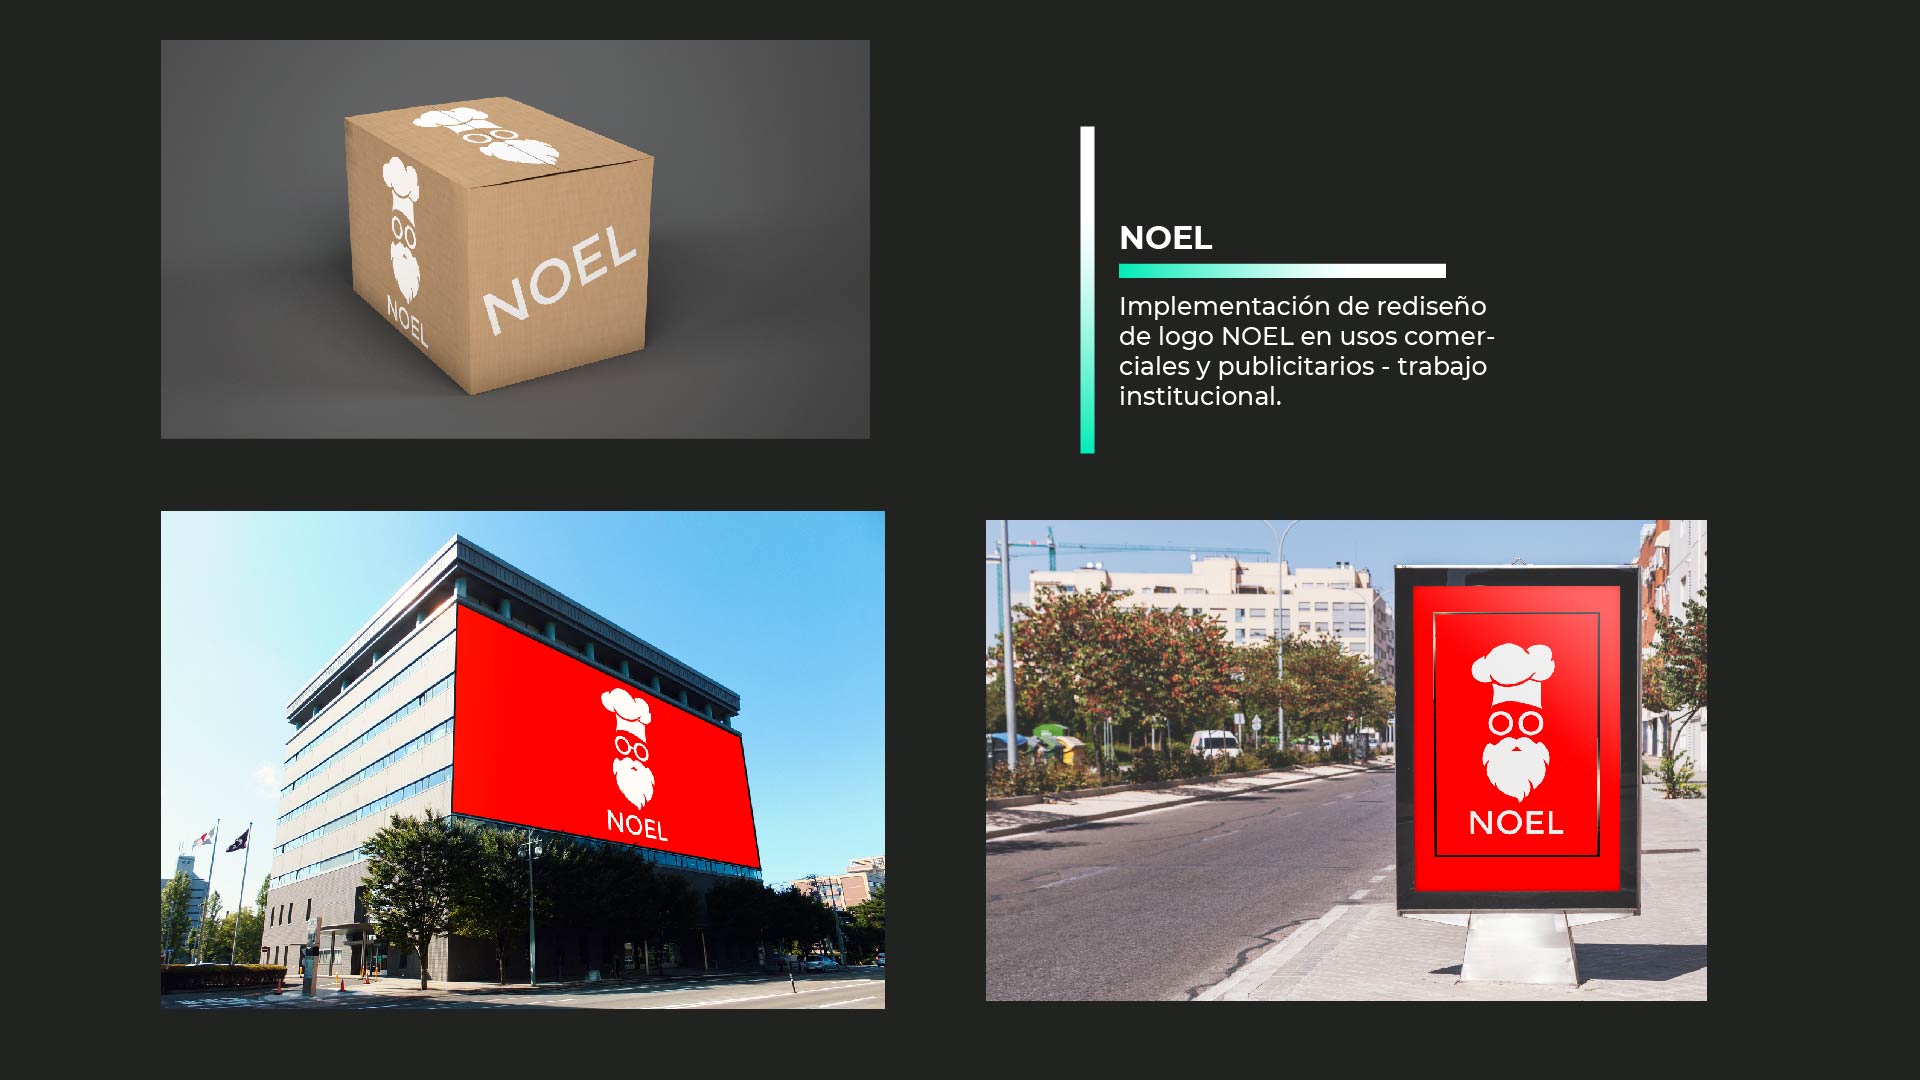 NOEL

Implementacion de rediseno
de logo NOEL en usos comer-
ciales y publicitarios - trabajo
institucional.